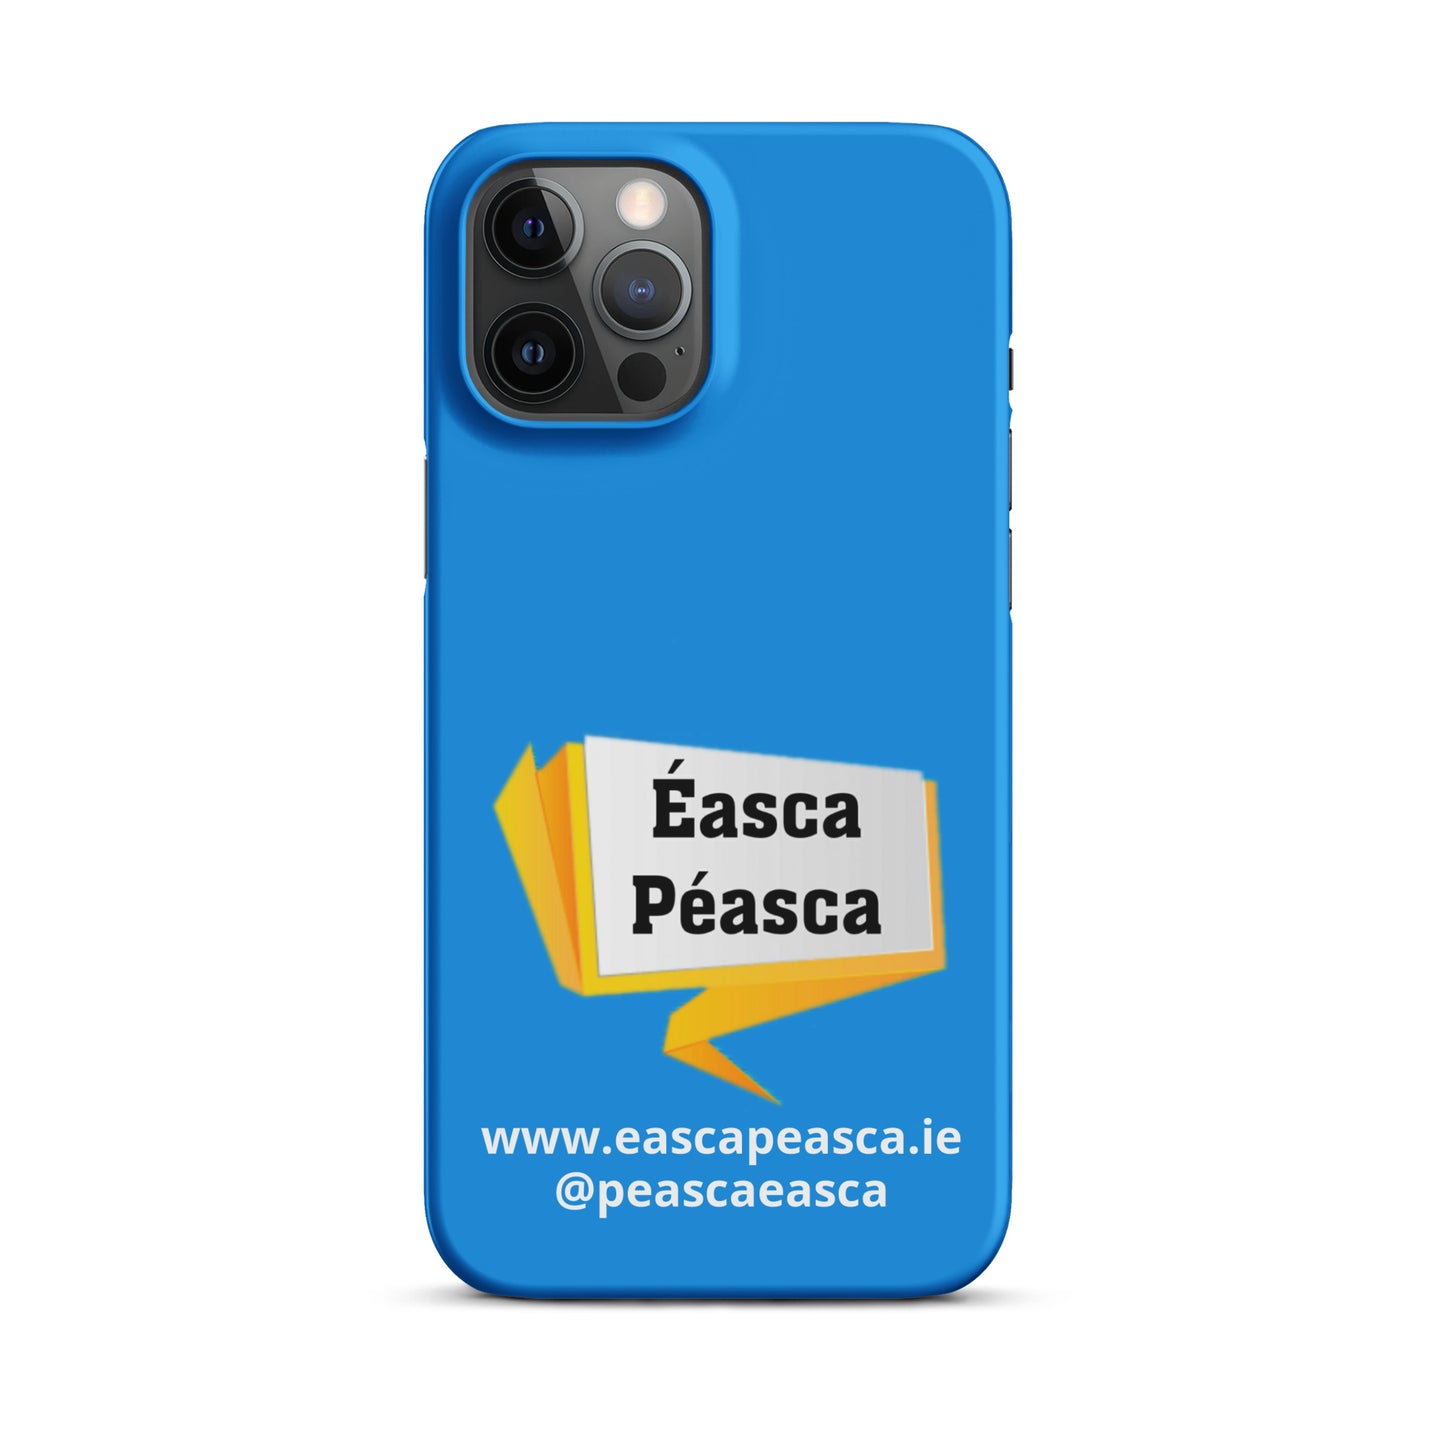 Cás ifóin: Éasca Péasca